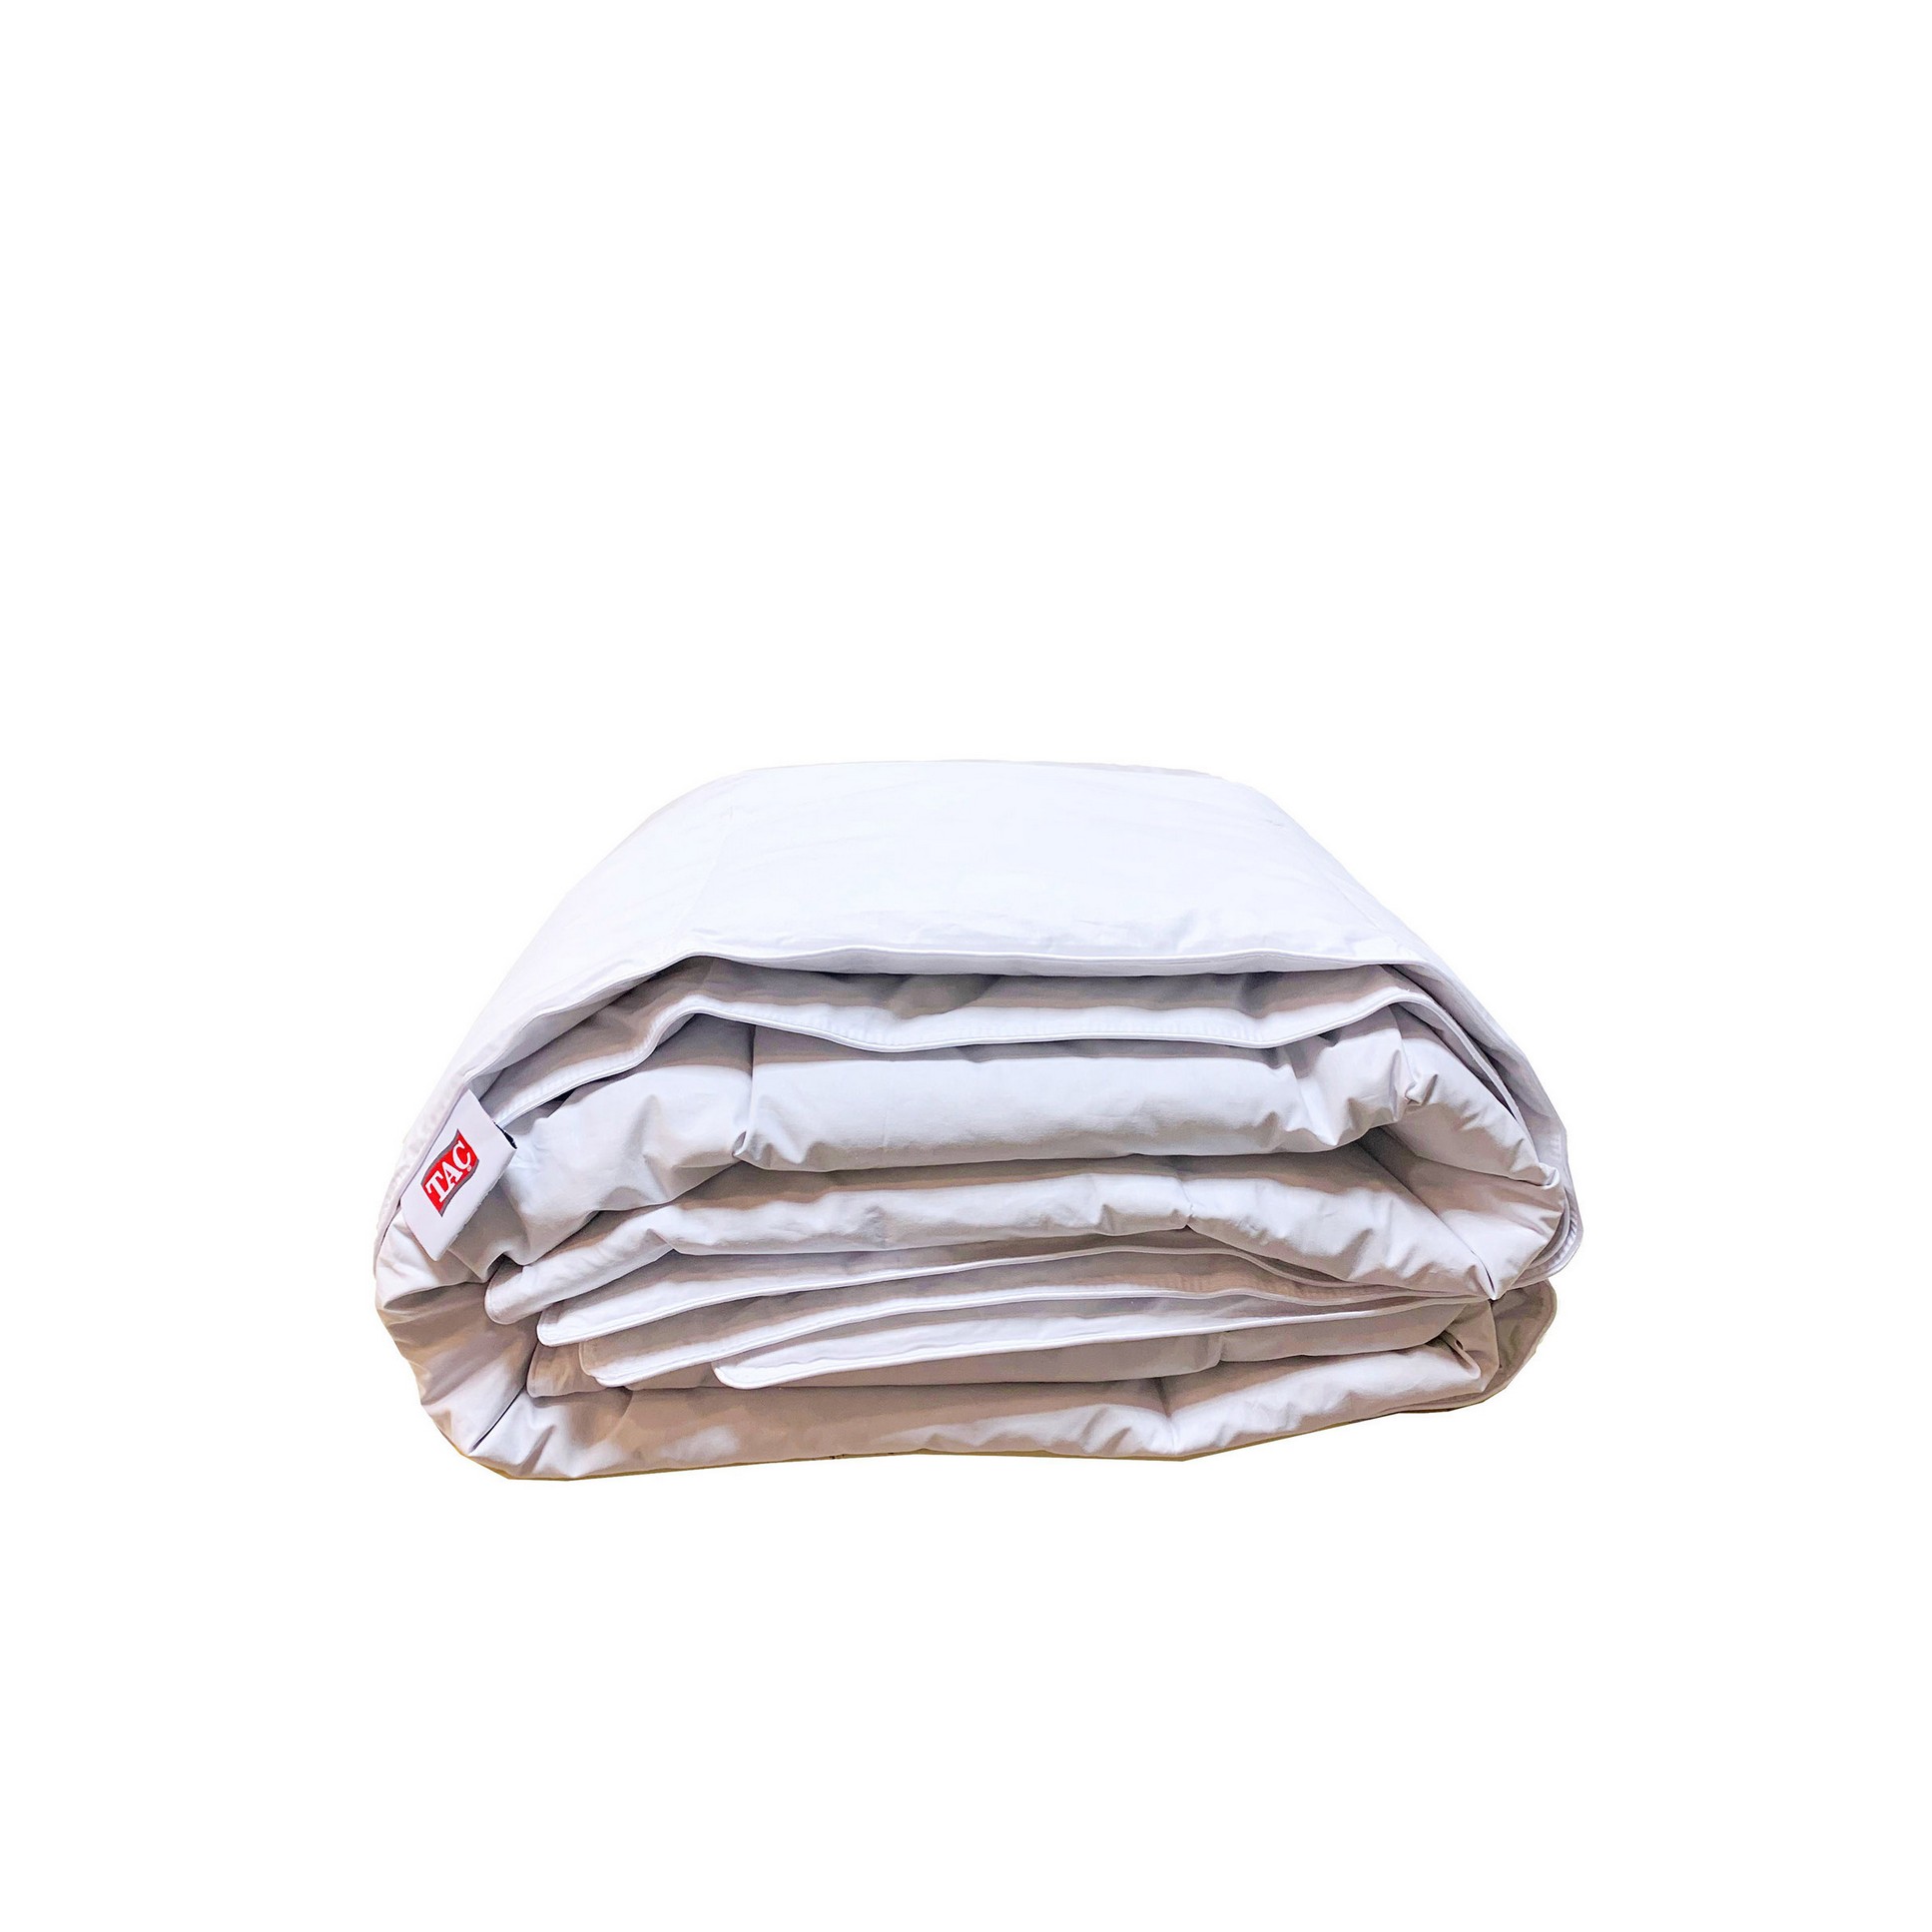 Одеяло Орнелла, гусиный пух-перо в хлопковом сатине (155х215 см), размер 155х215 см tac950731 Одеяло Орнелла, гусиный пух-перо в хлопковом сатине (155х215 см) - фото 1